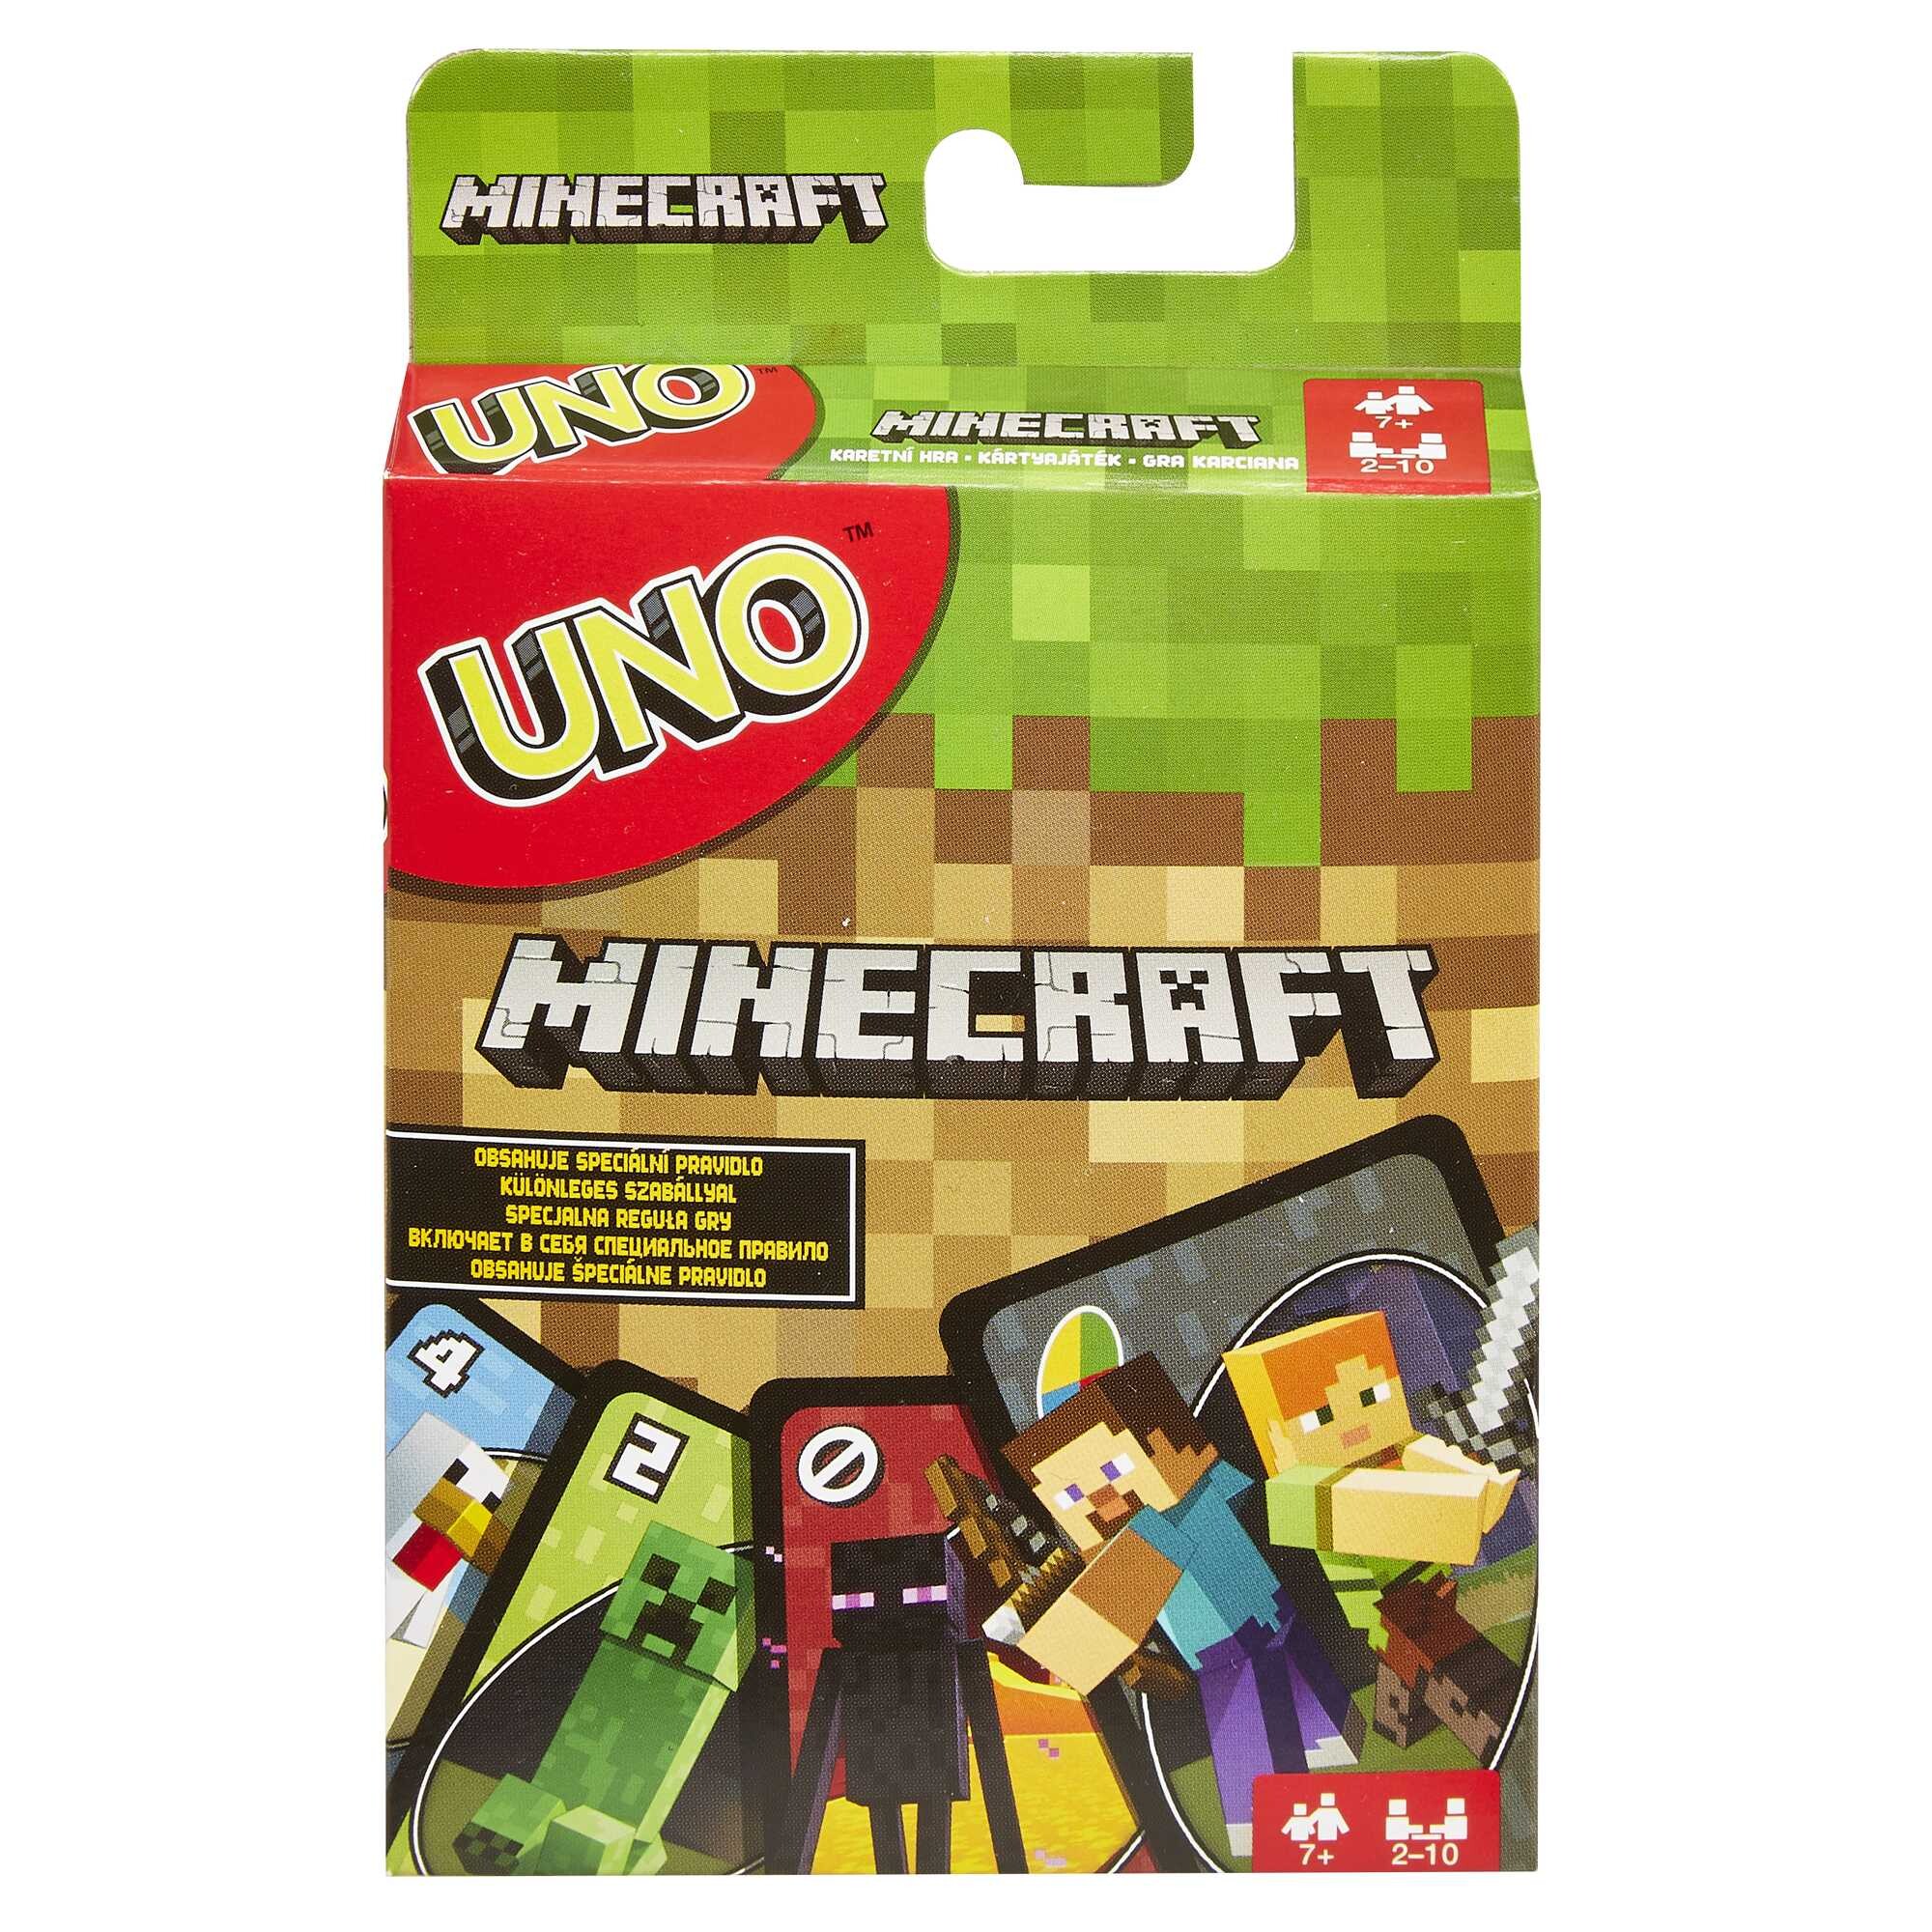 Uno minecraft, l'iconico gioco di carte nella versione ispirata la videogioco - UNO